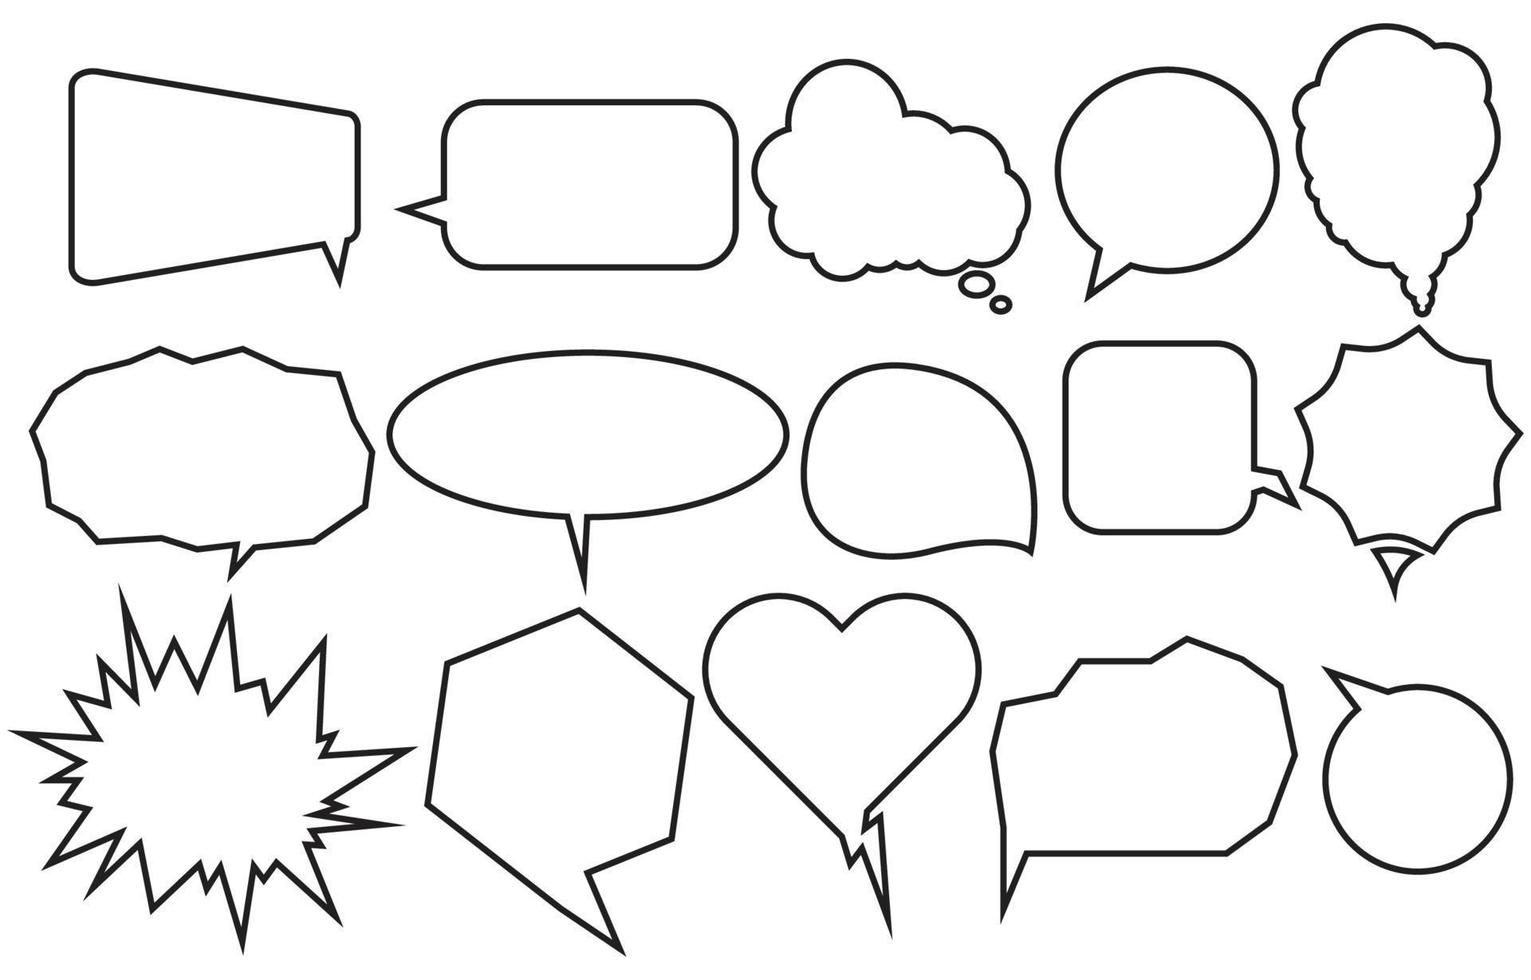 ange pratbubblor olika former på vit bakgrund. chattbox eller chattvektor doodle meddelande eller kommunikationsikon molntalande för serier och serier meddelandedialog vektor